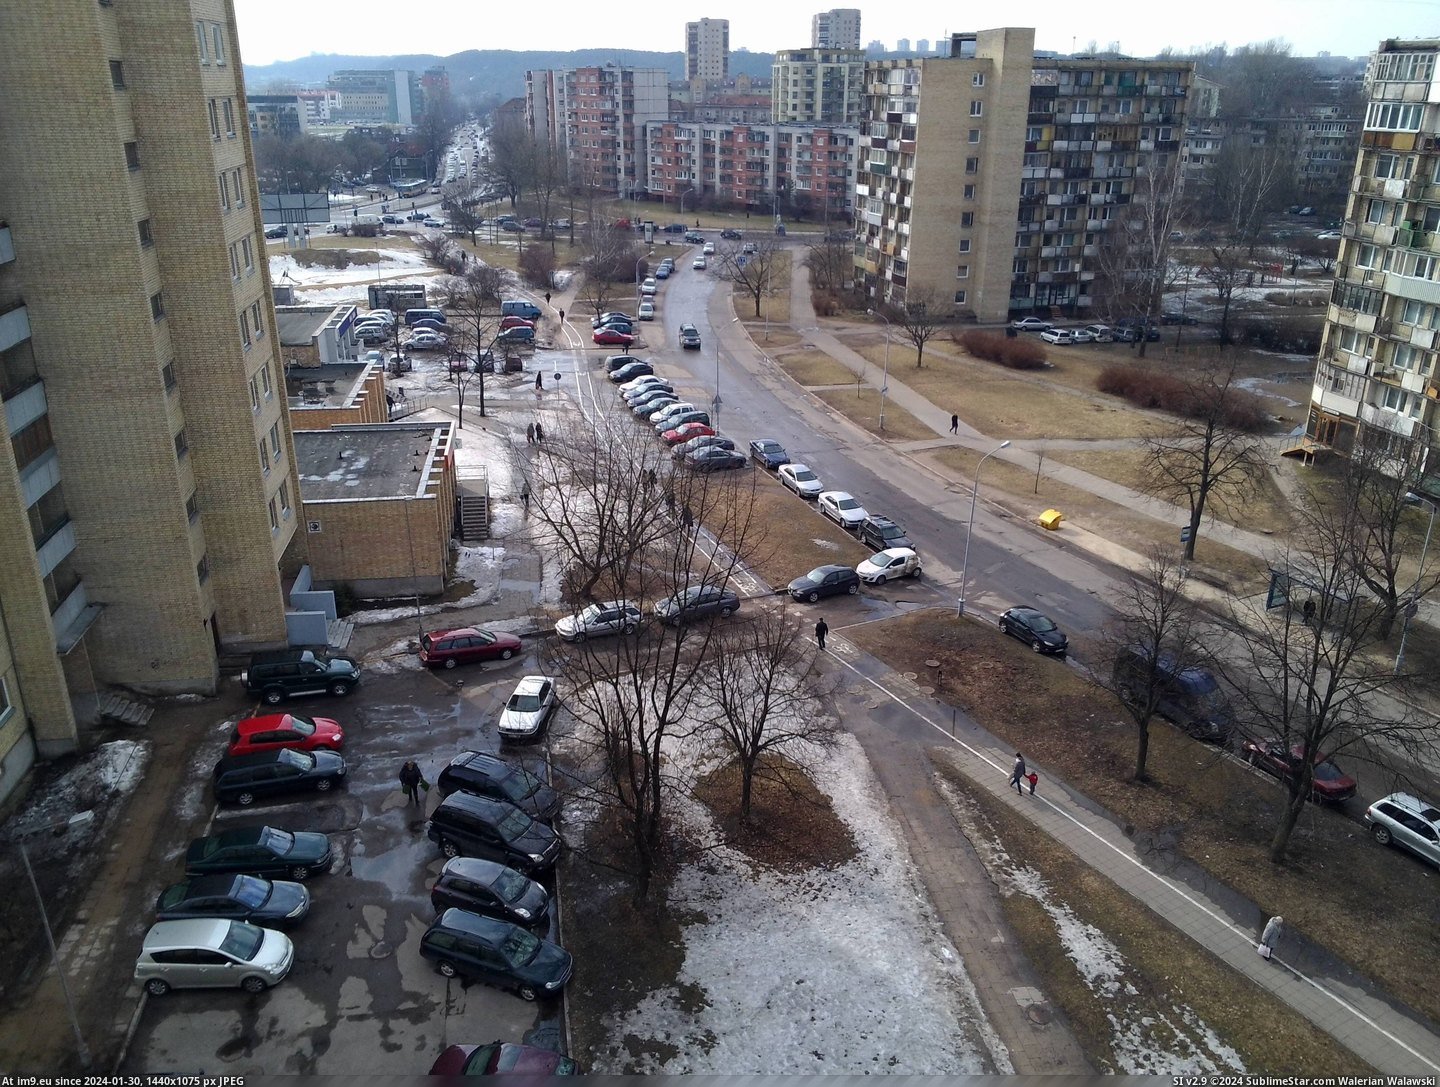  #Vilnius  20130412-1639vilnius Pic. (Obraz z album kovas))